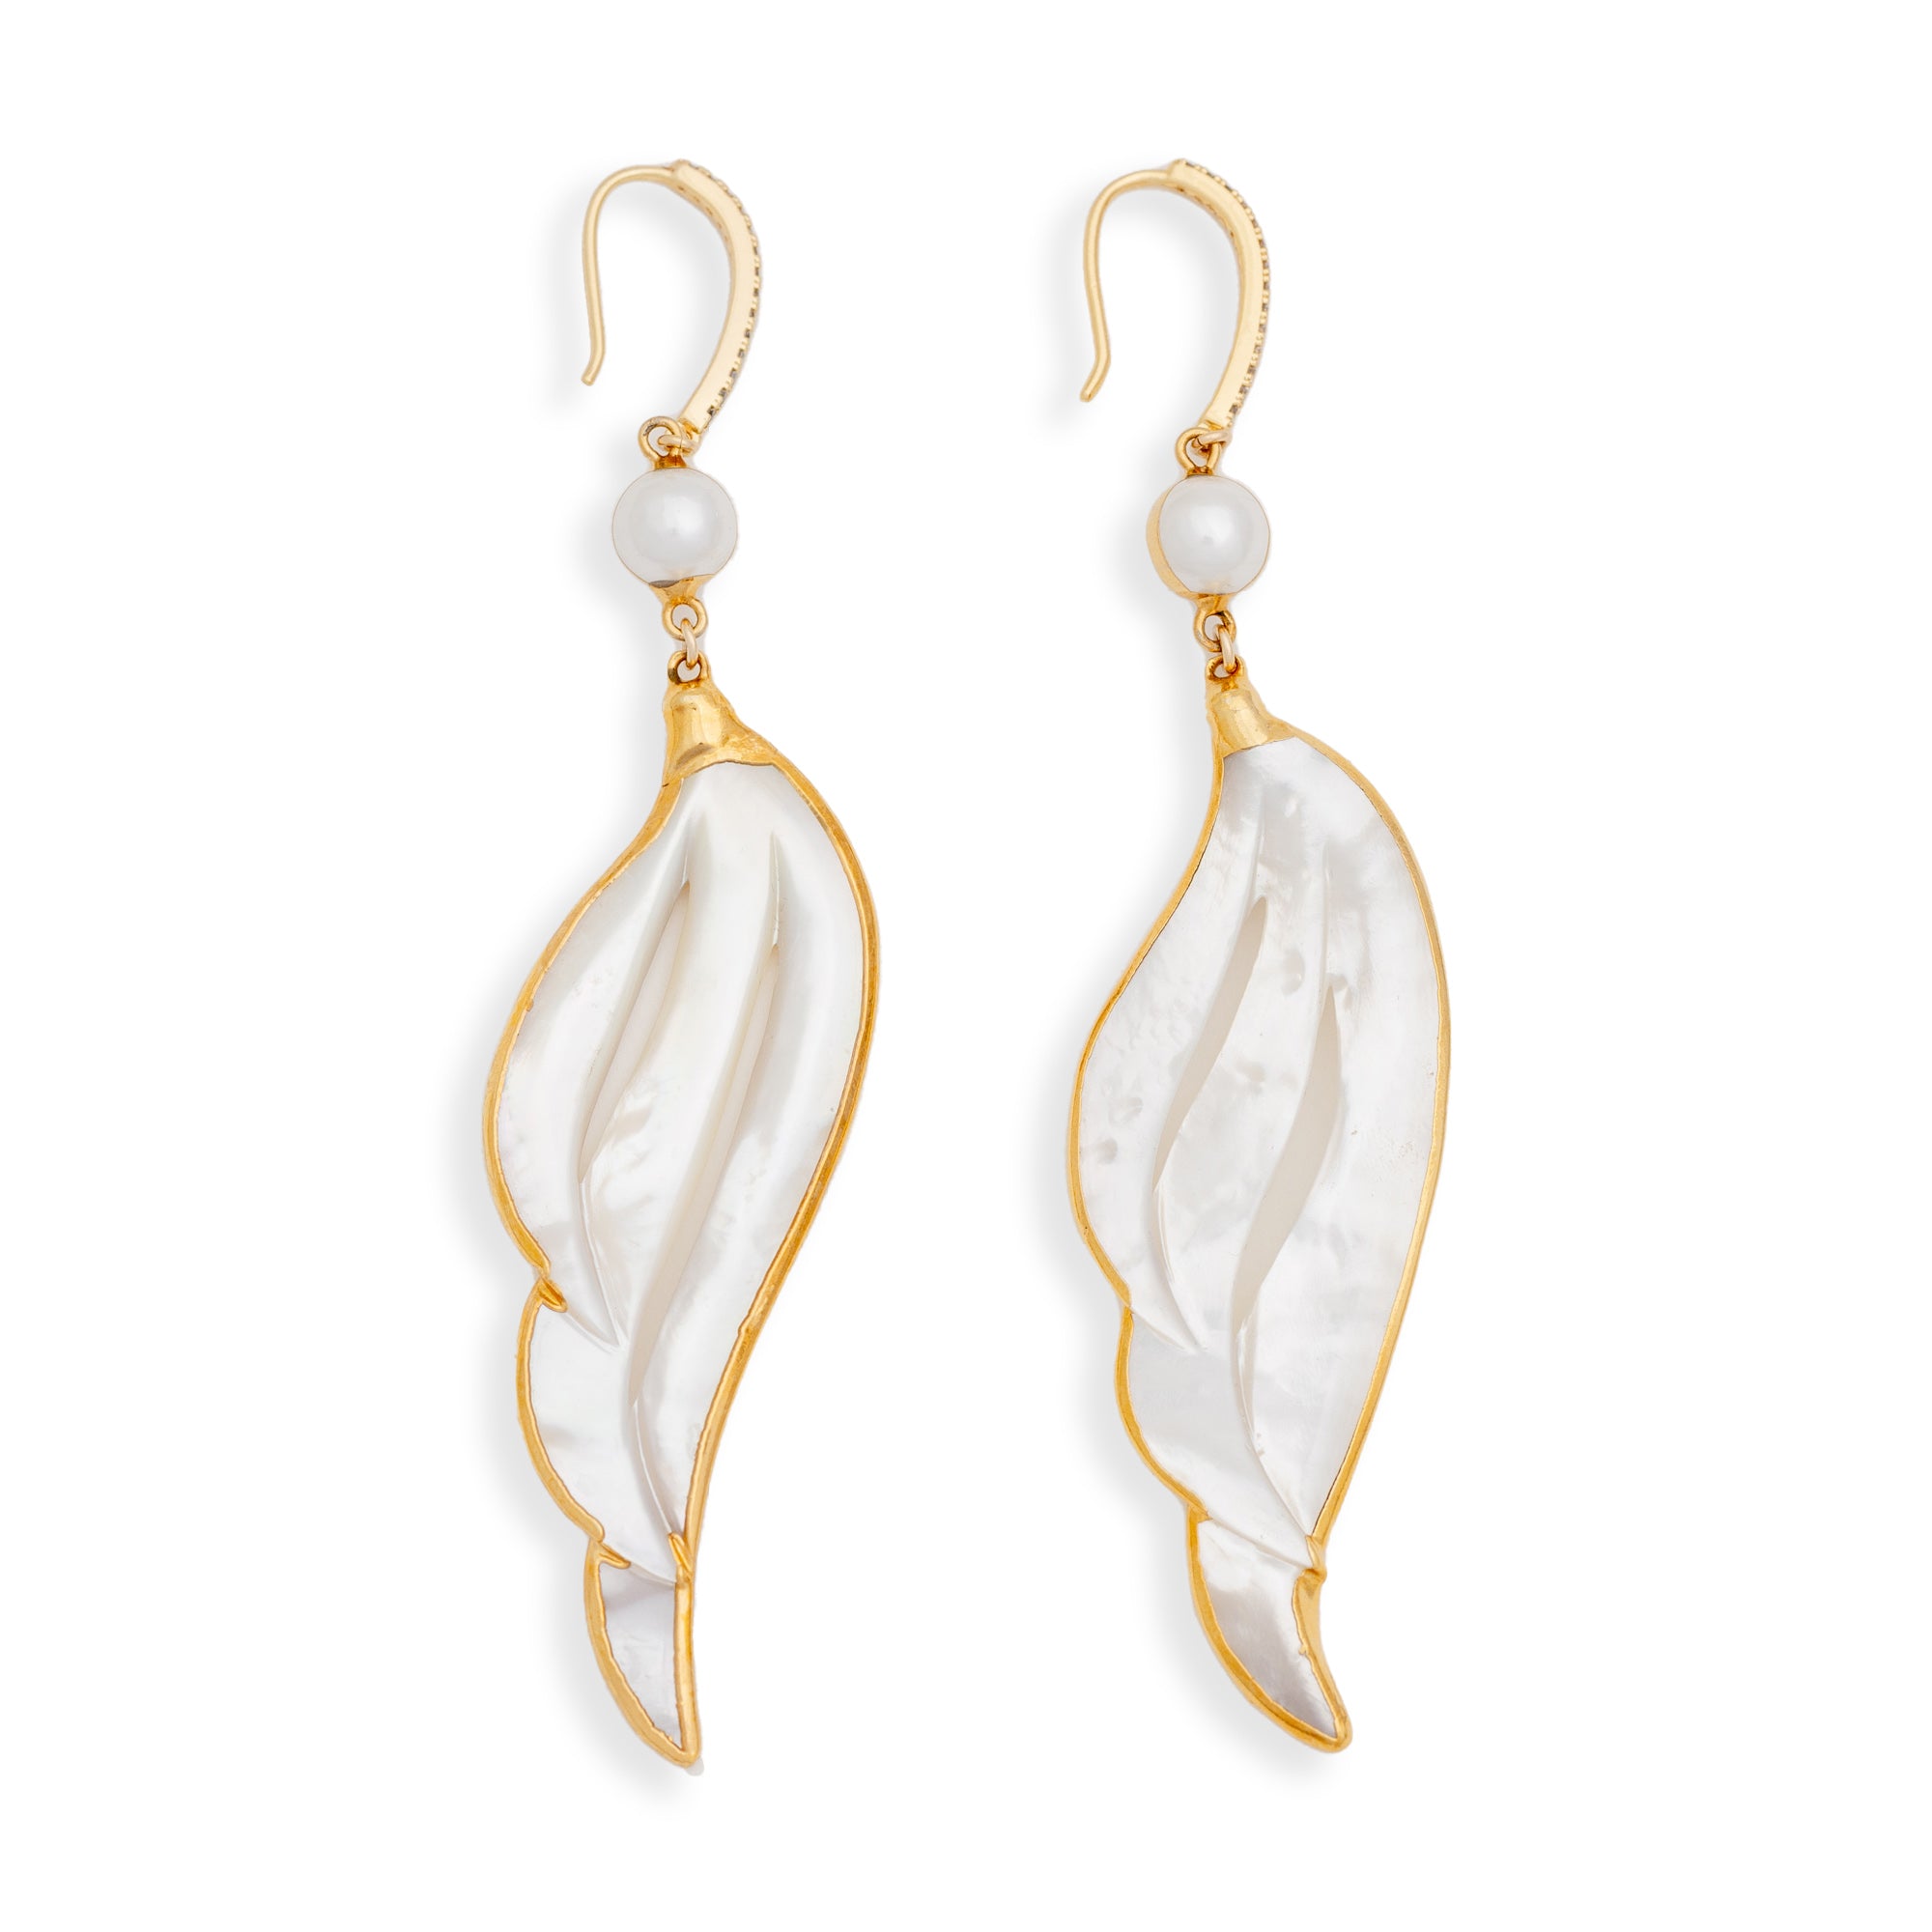 Fallen Angel Earrings by Erin Fader Jewelry